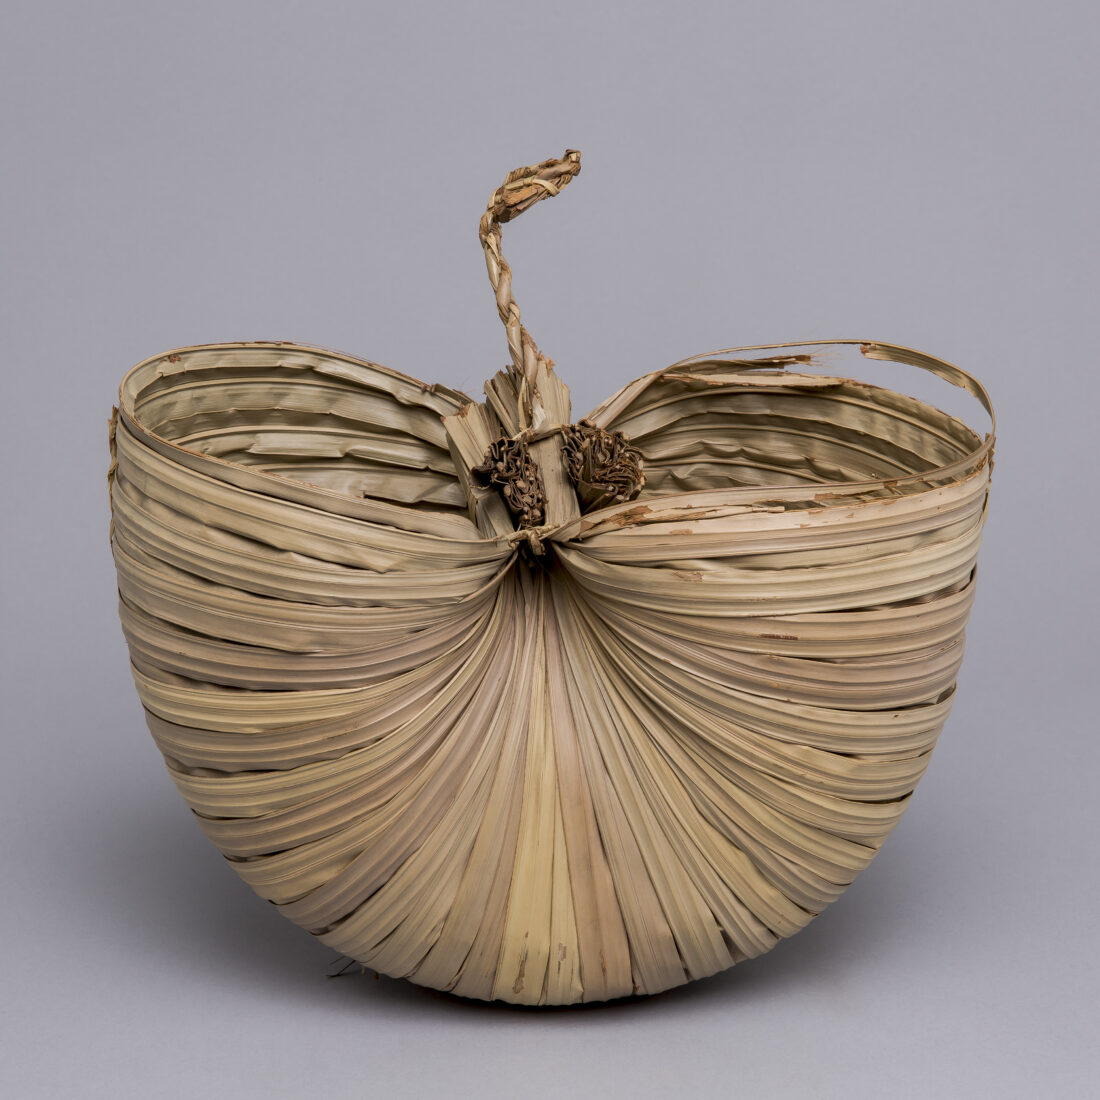 Water Basket, Makassar, Sulawesi, Indonesia, before 1905, Makassar Strait